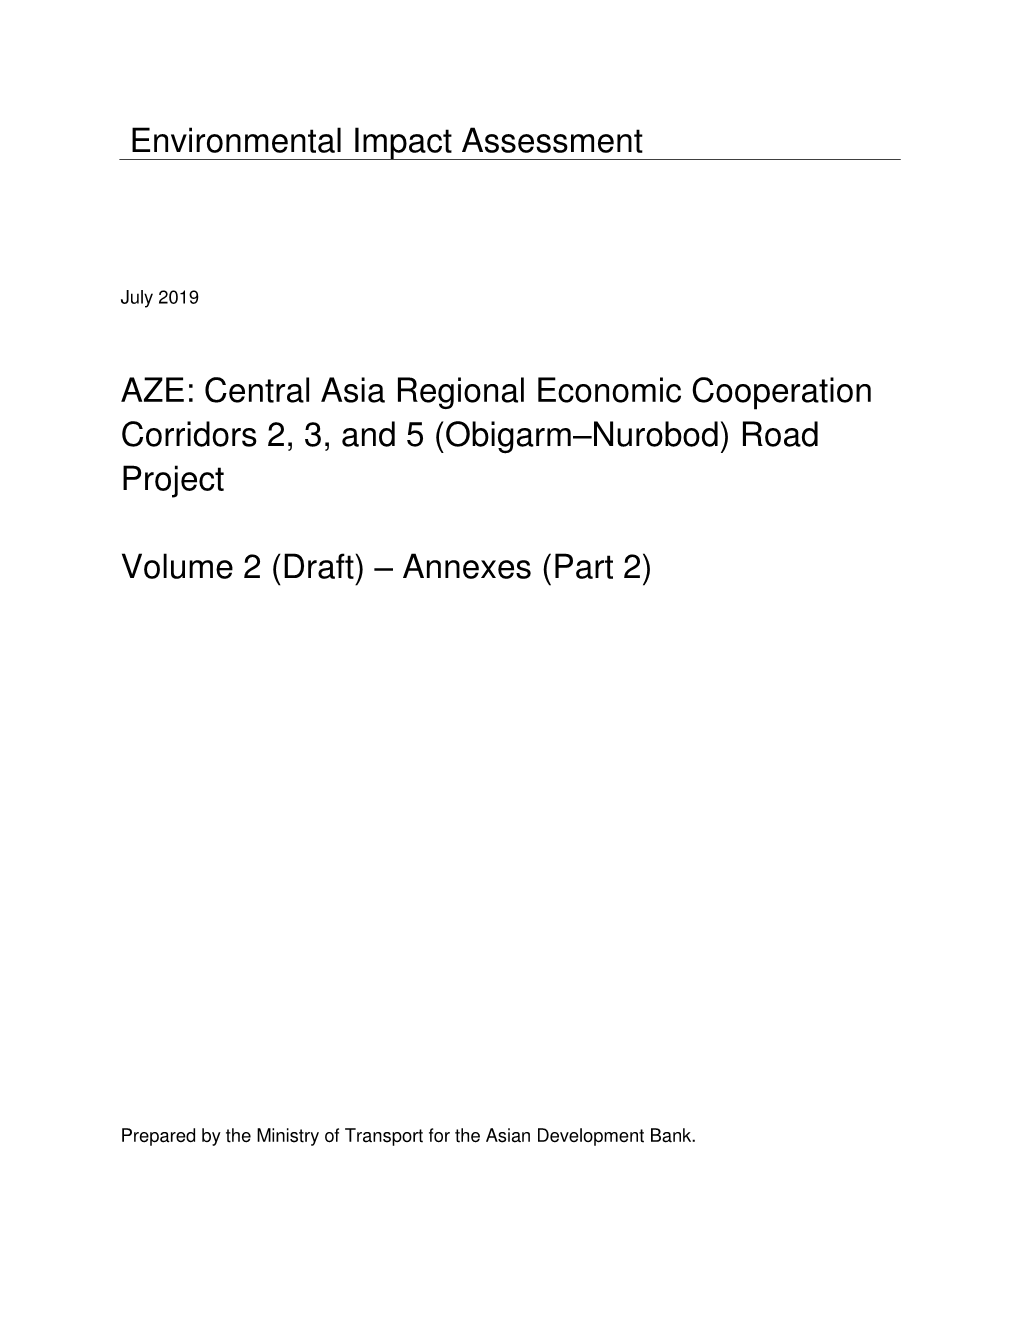 52042-001: Central Asia Regional Economic Cooperation Corridors